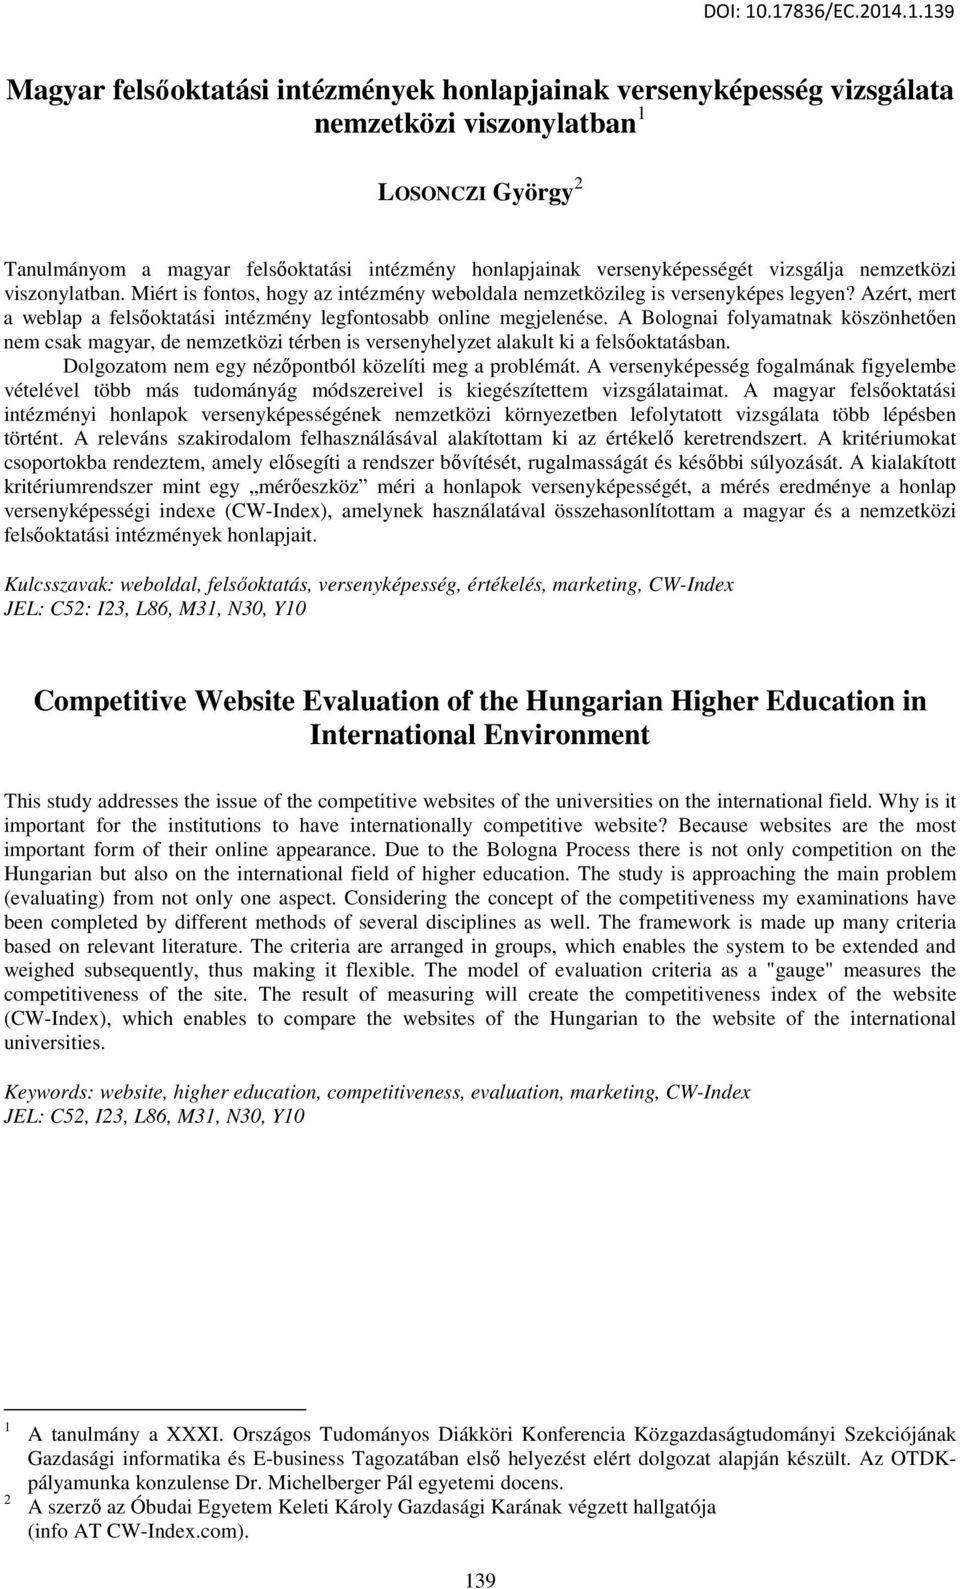 versenyképességét vizsgálja nemzetközi viszonylatban. Miért is fontos, hogy az intézmény weboldala nemzetközileg is versenyképes legyen?